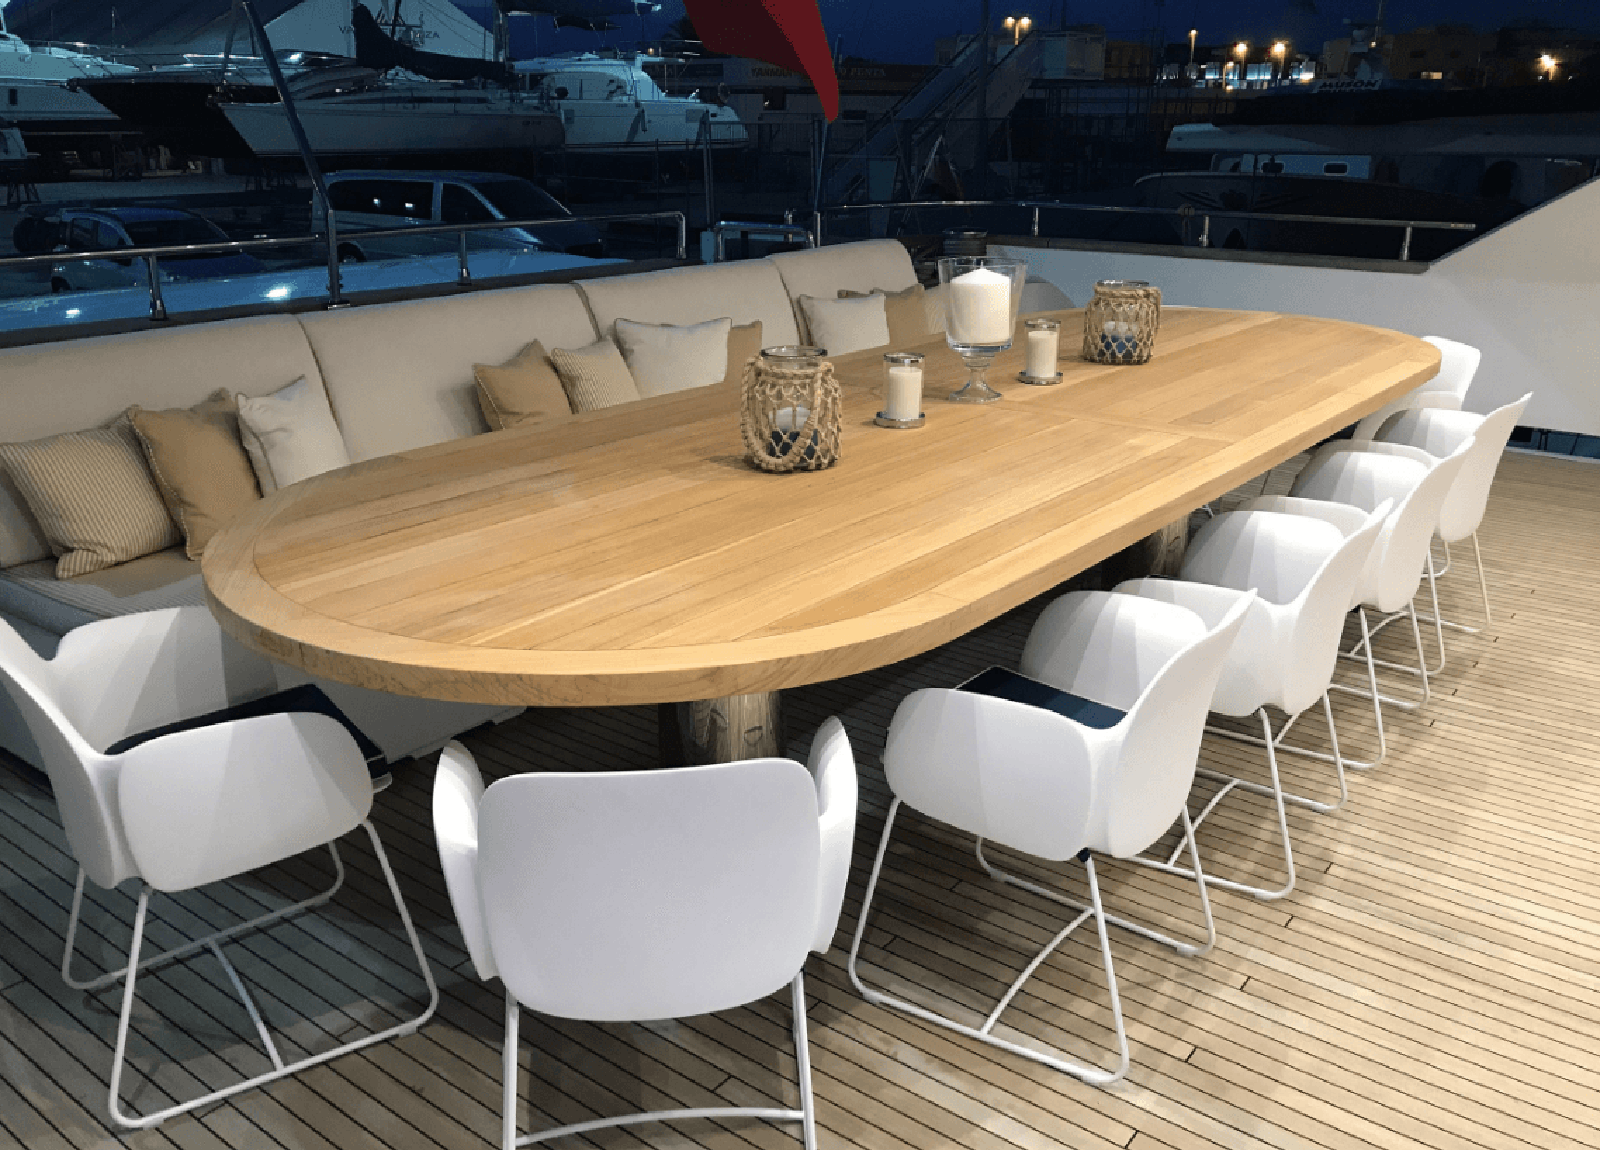 upperdeck-seating-luxury-yacht-villa-sul-mare-44m